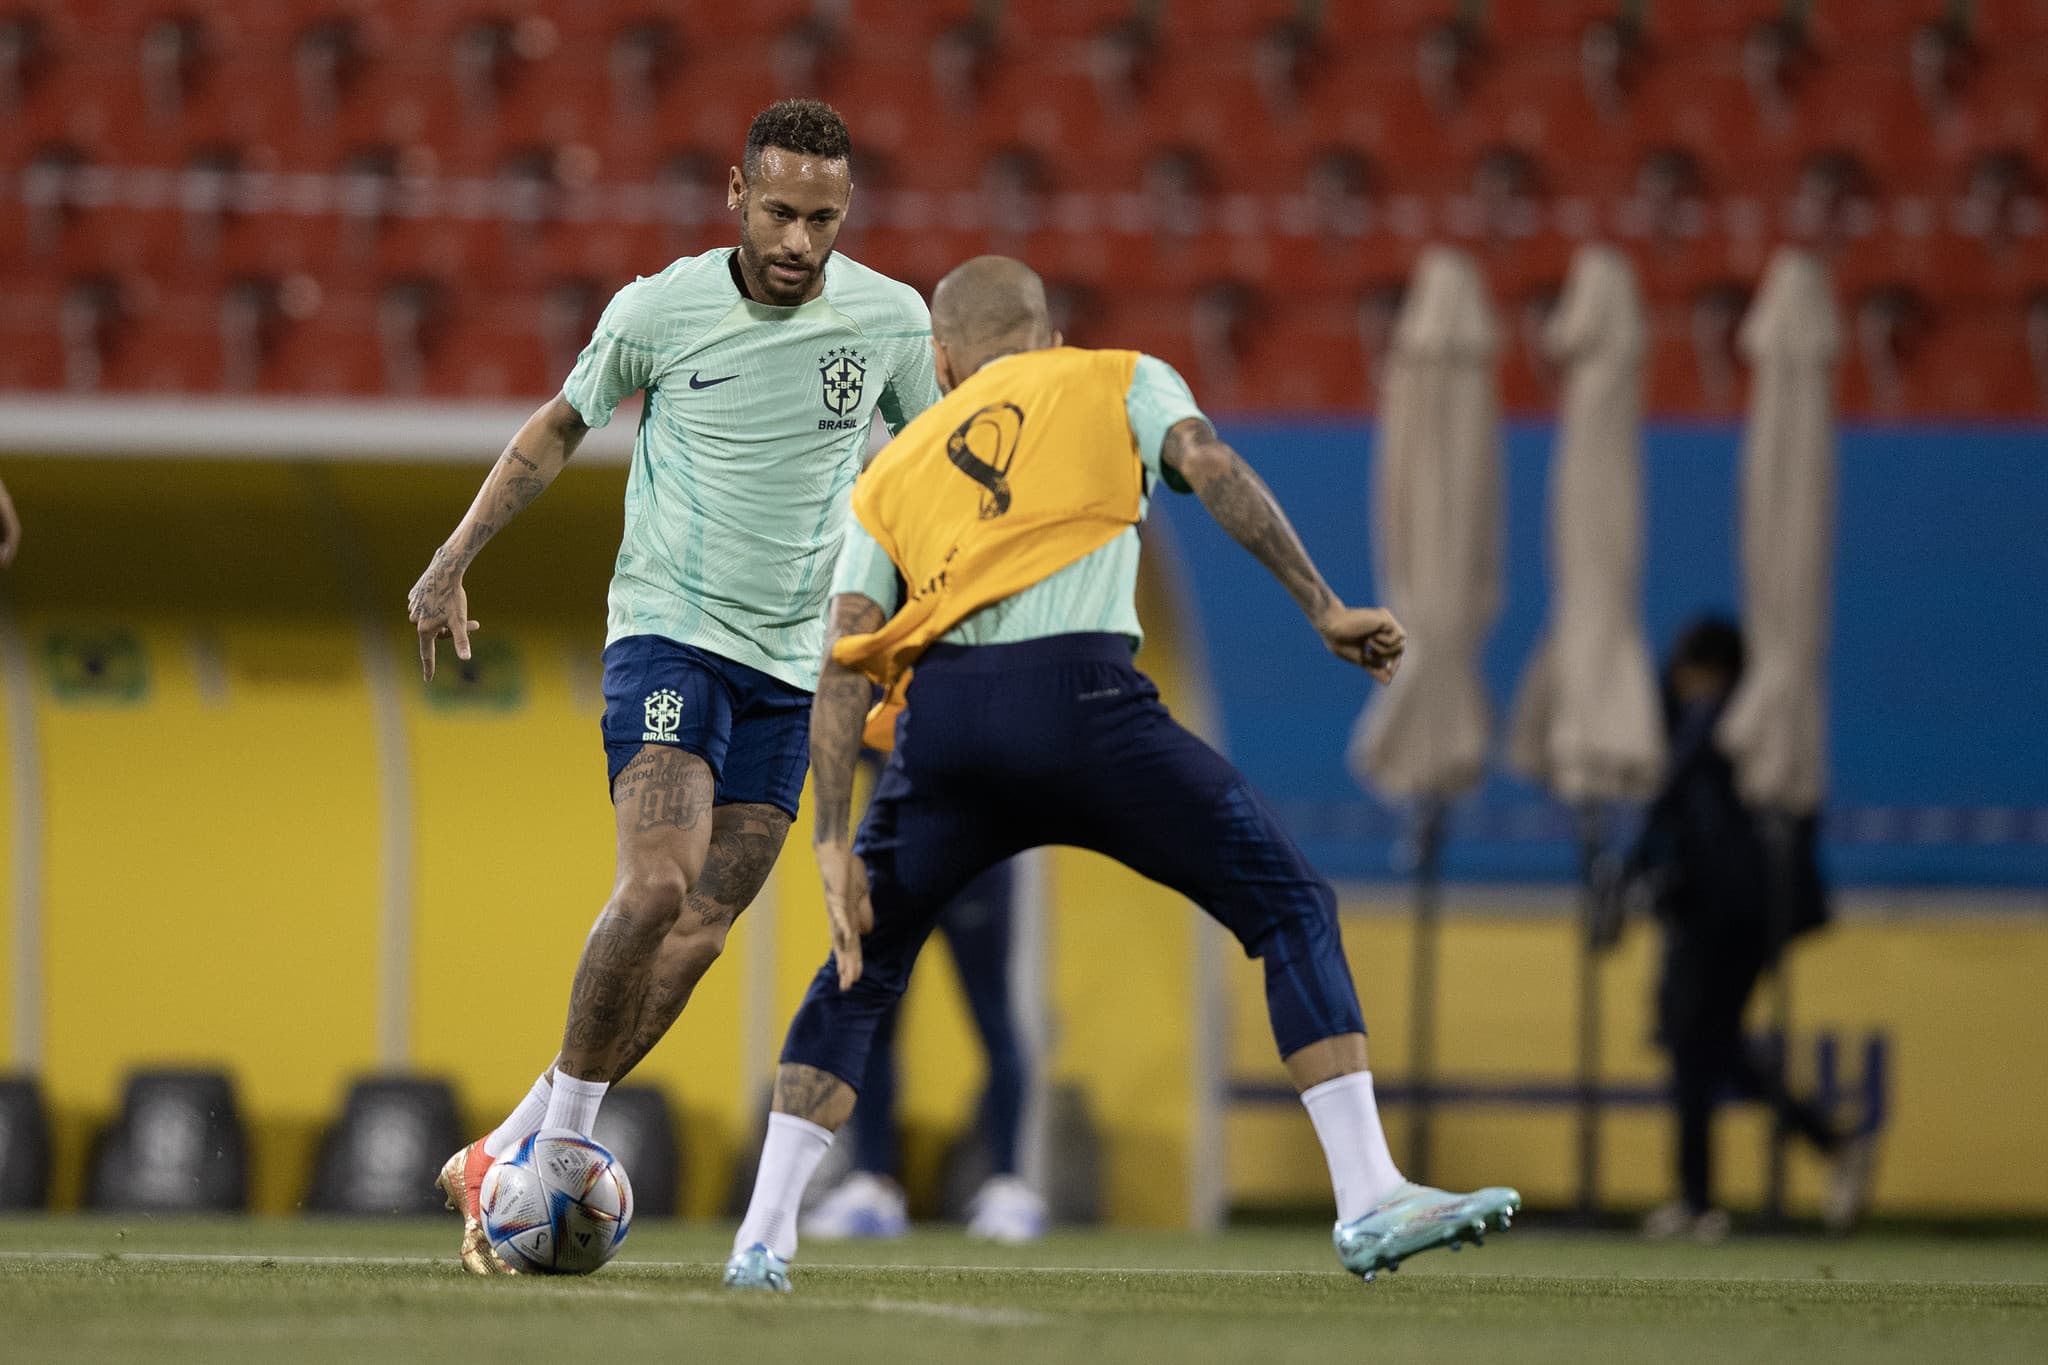 Neymar, à frente de Ronaldo, resolve para o Brasil como Fenômeno